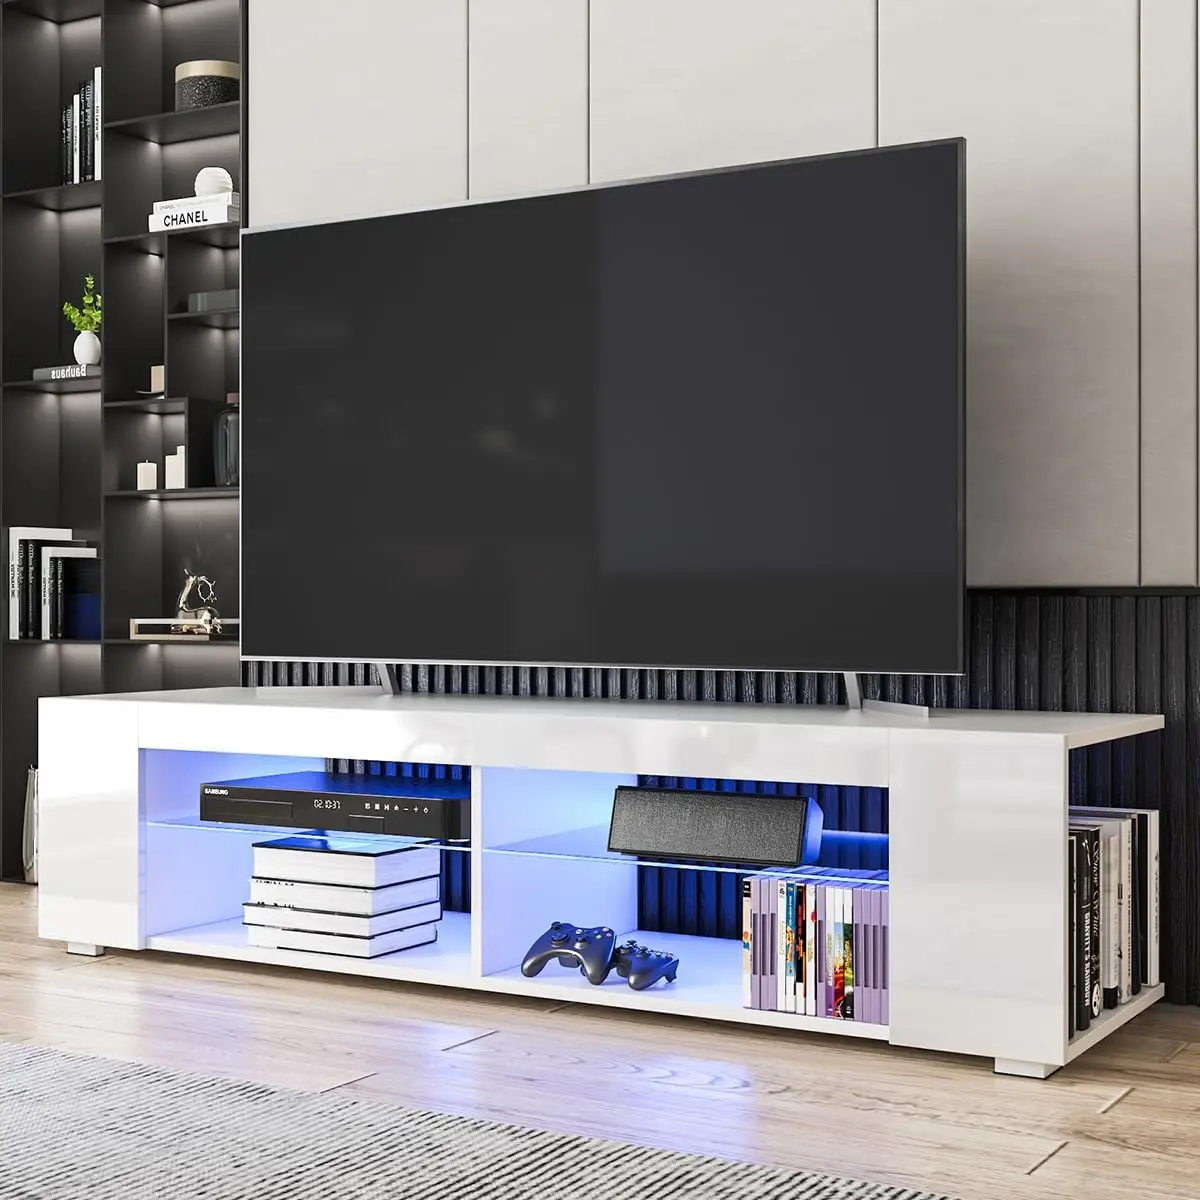 

Светодиодный TV стенд для 65-дюймовых телевизоров, белый современный развлекательный центр, 57 дюймов с фонариками, маленькая ТВ-консоль, медиа-стол